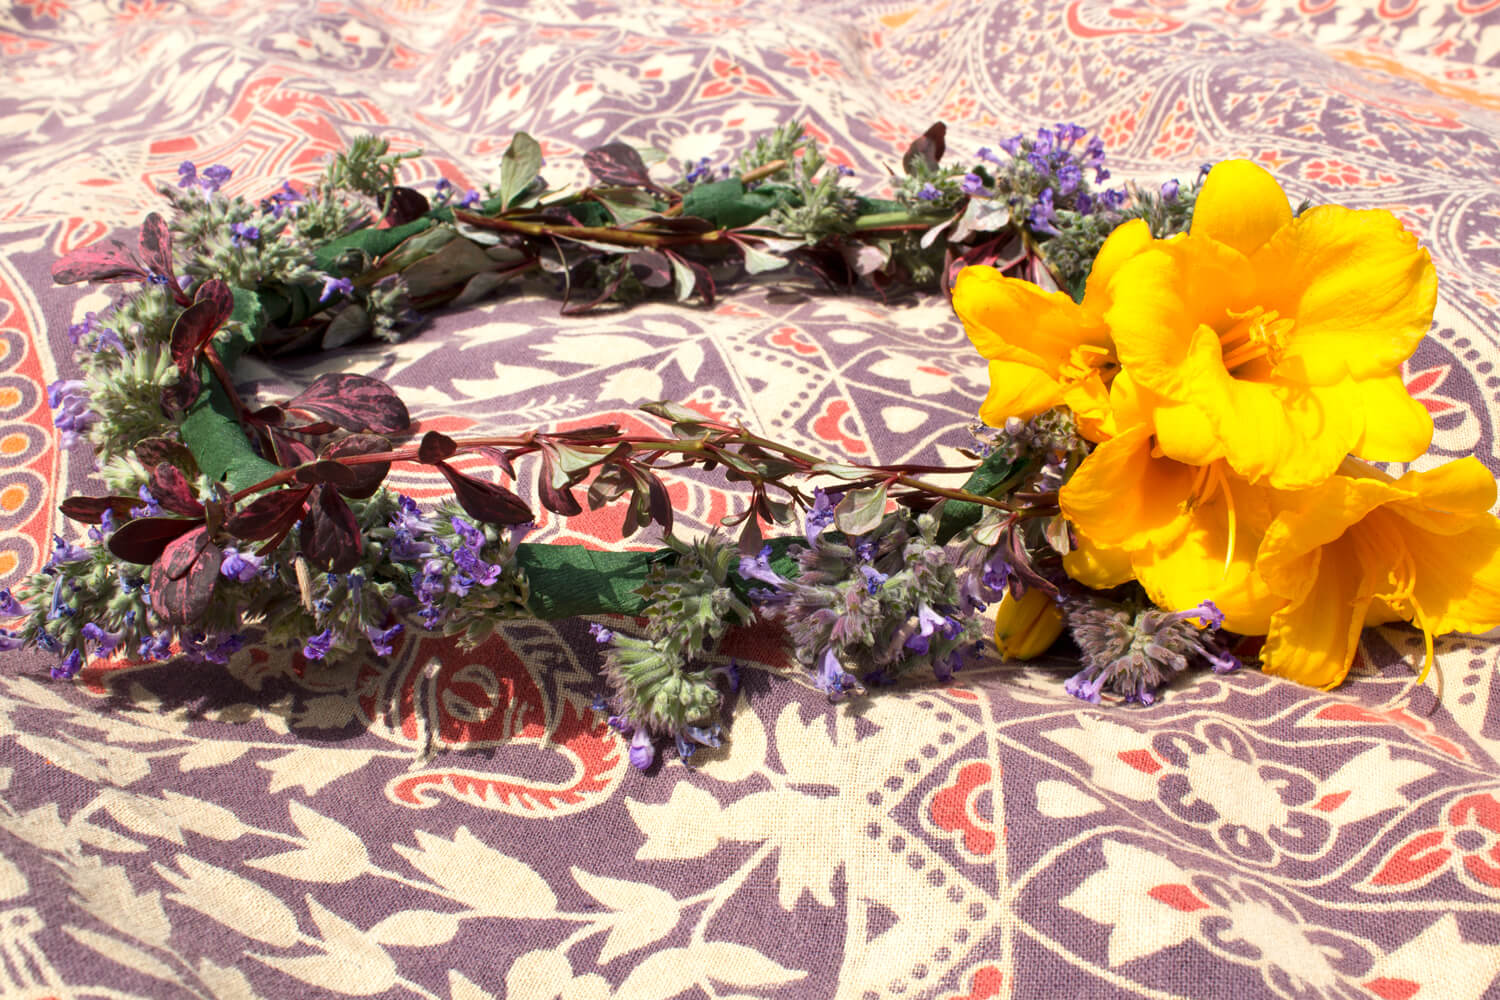 hippie flower crown 9 - Hippie Flower Crown- DIY Flower Crown